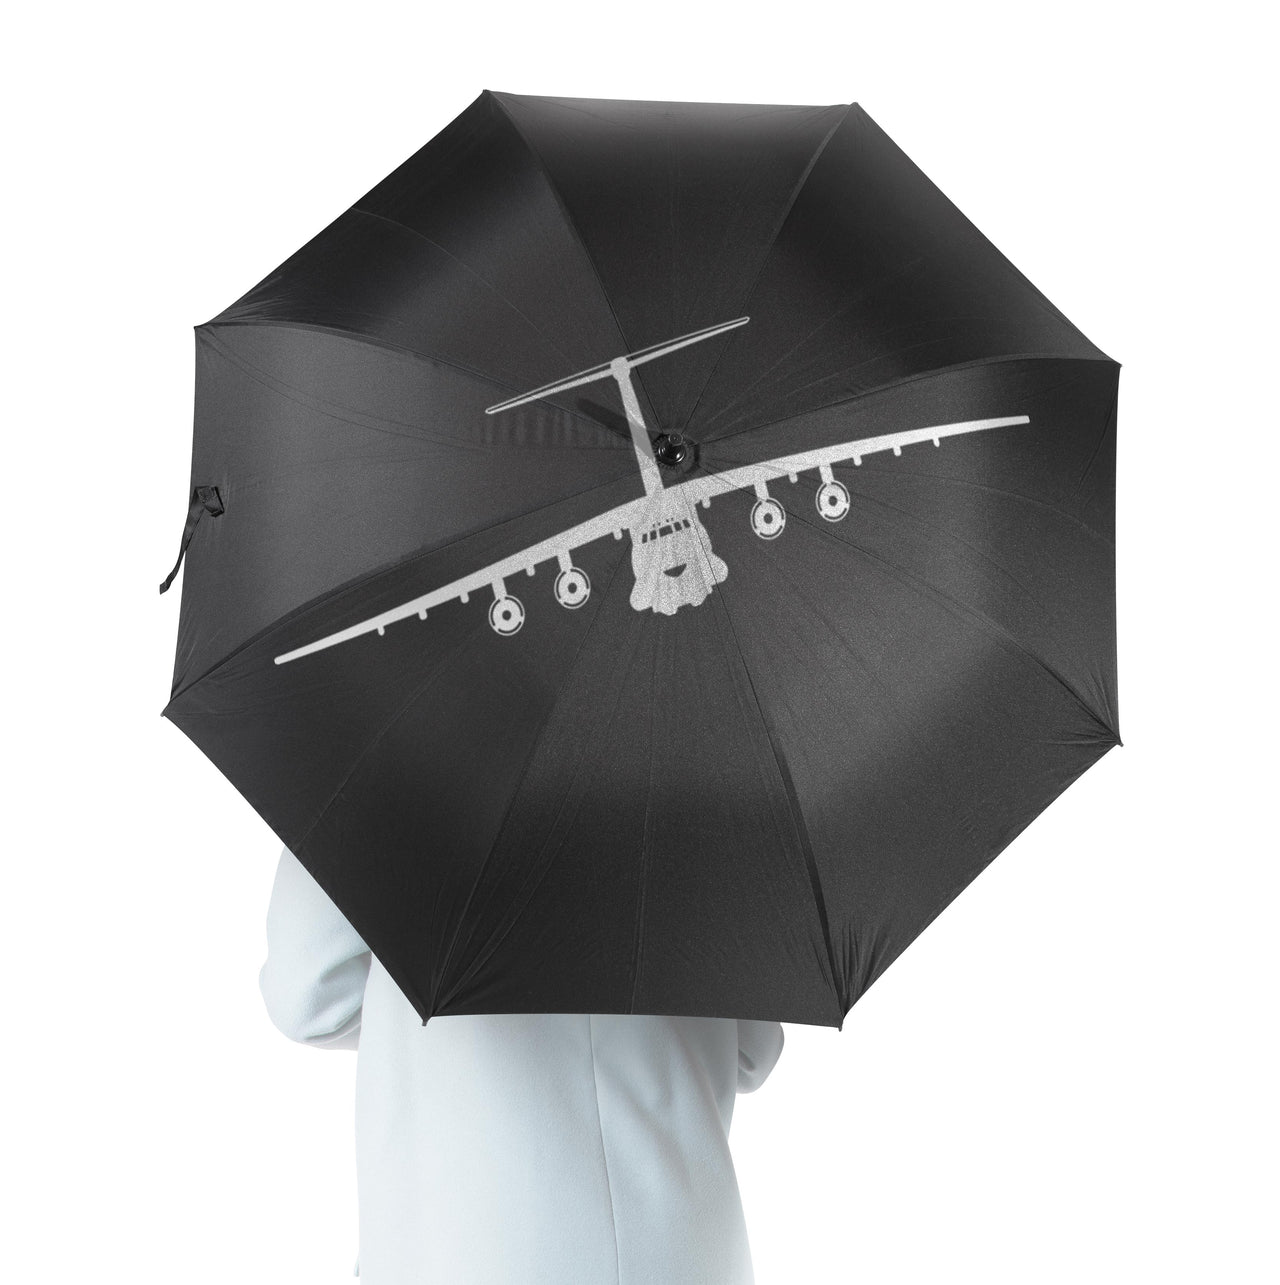 Ilyushin IL-76 Silhouette Designed Umbrella